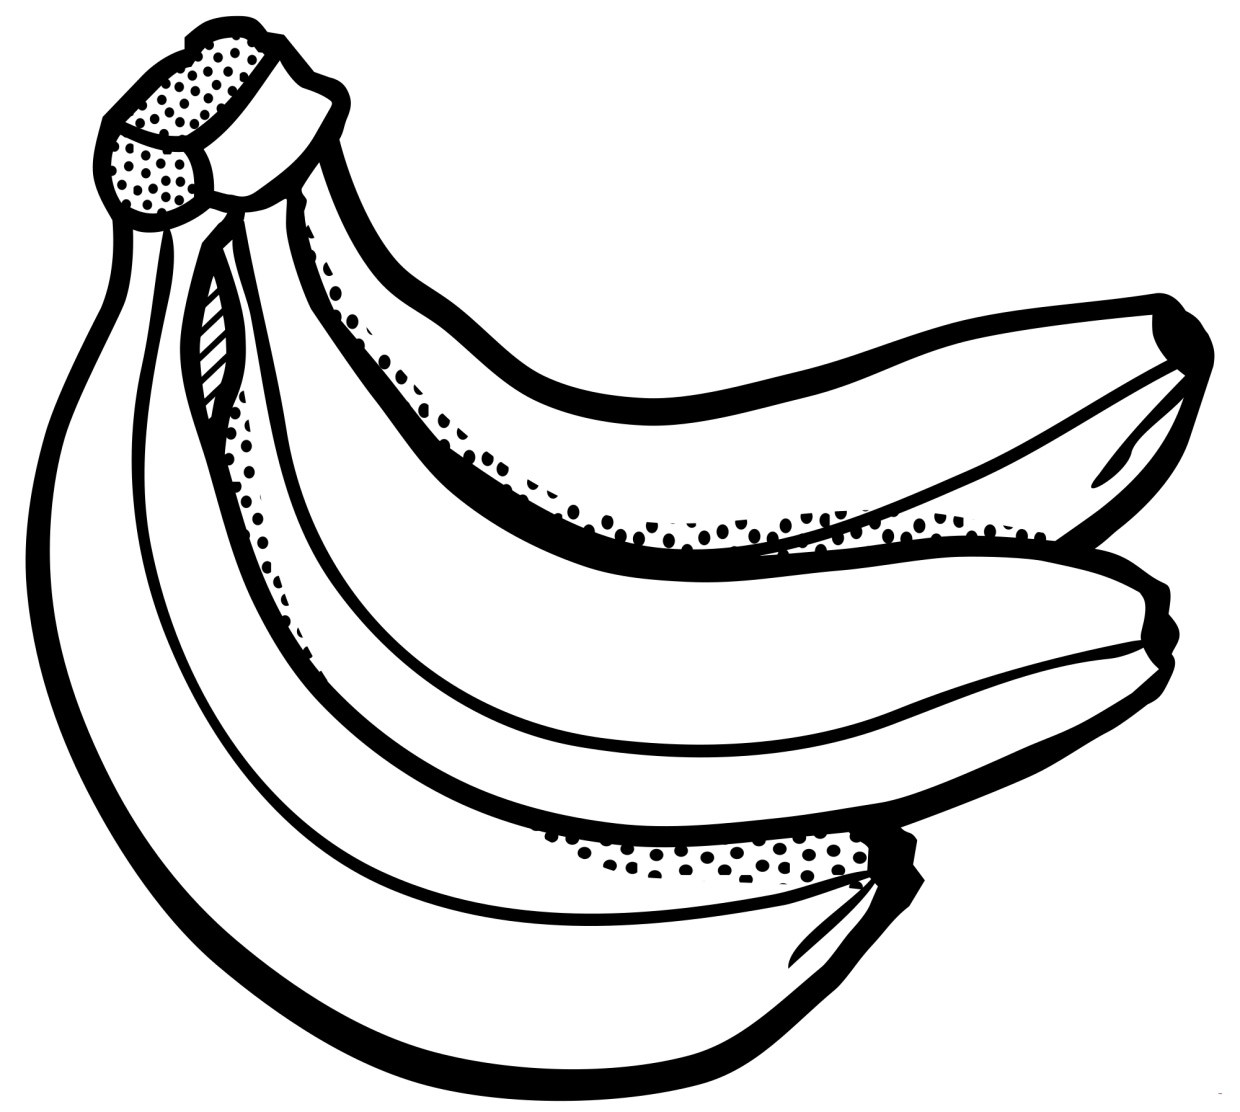 Página para colorir com banana para crianças